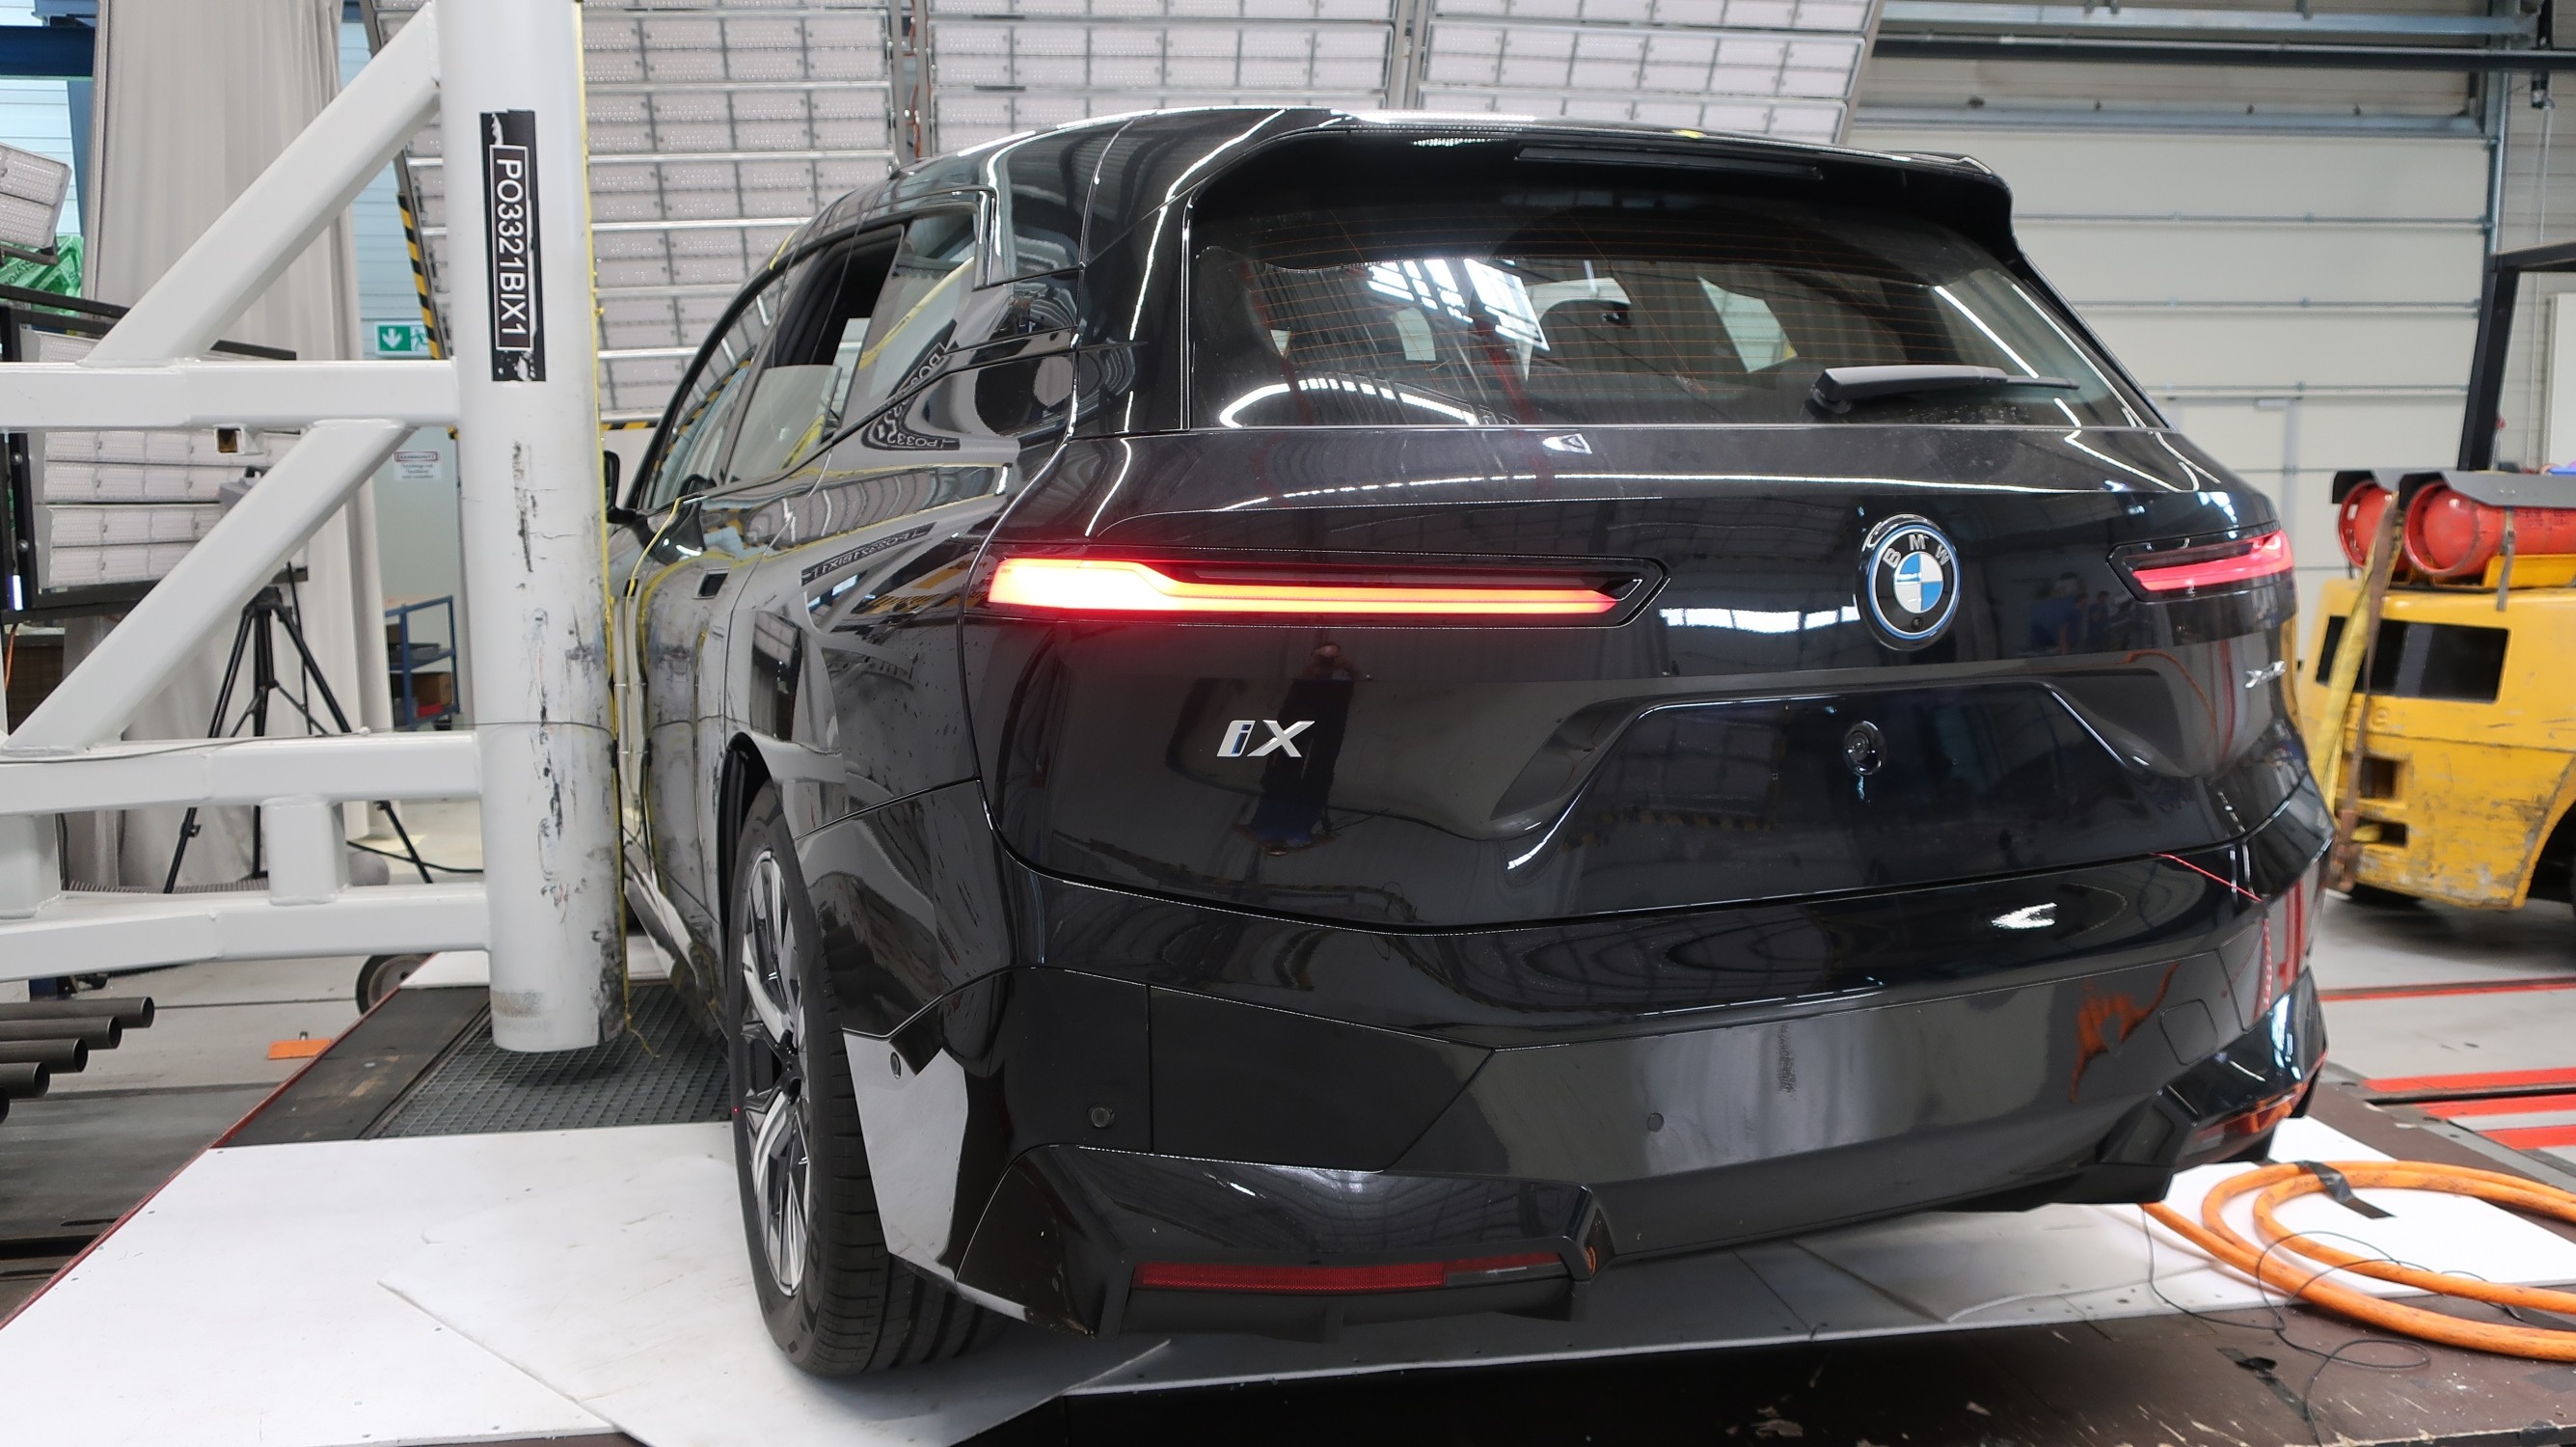 创新BMW iX获得欧盟NCAP测试五星安全评级